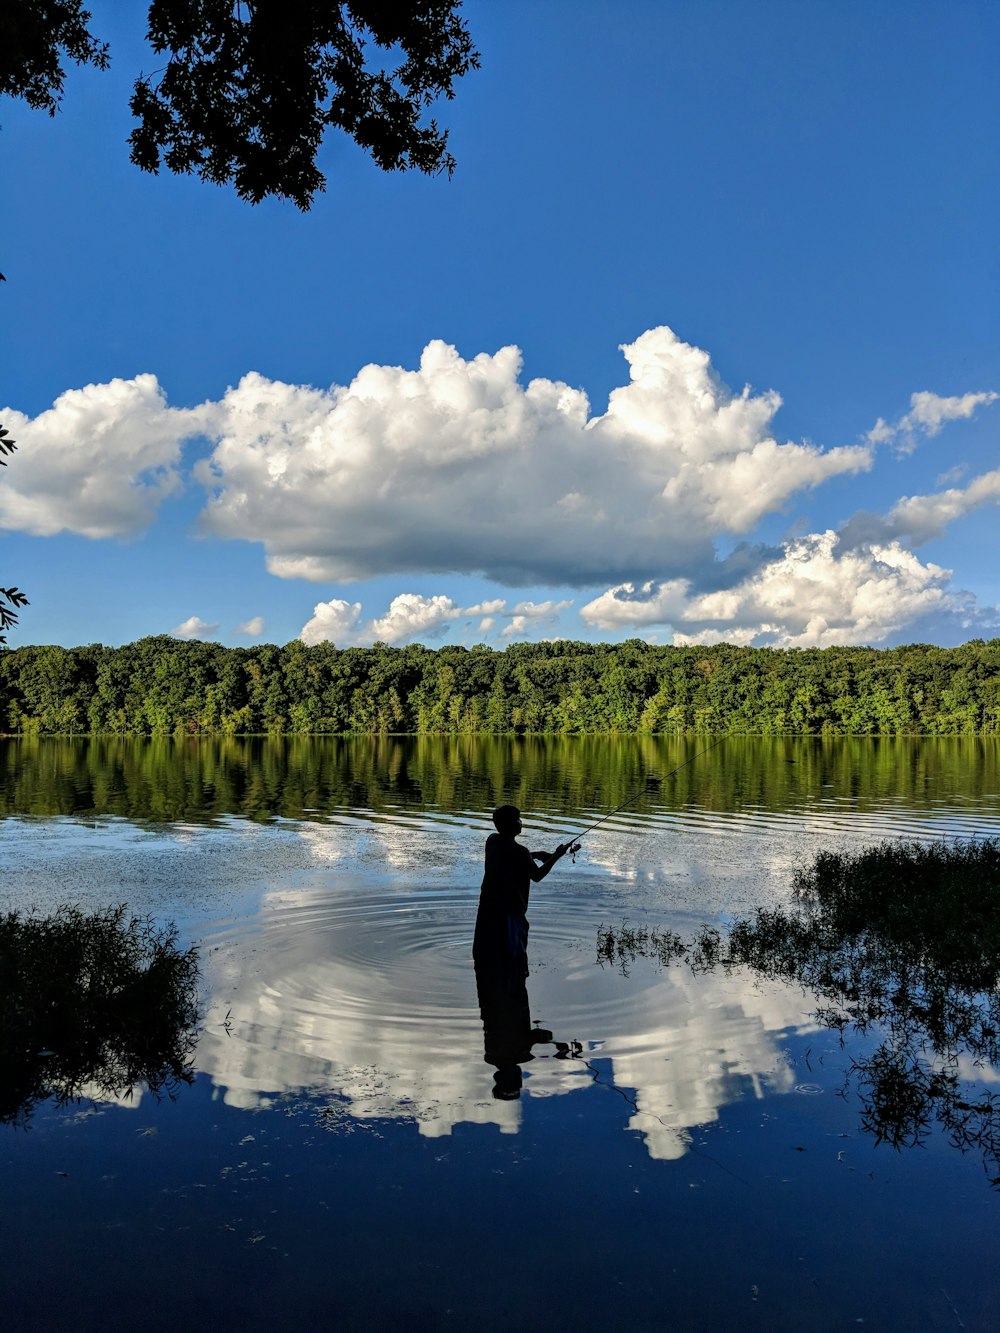 Persona de pie sobre el agua cerca de árboles verdes bajo el cielo azul y nubes blancas durante el día